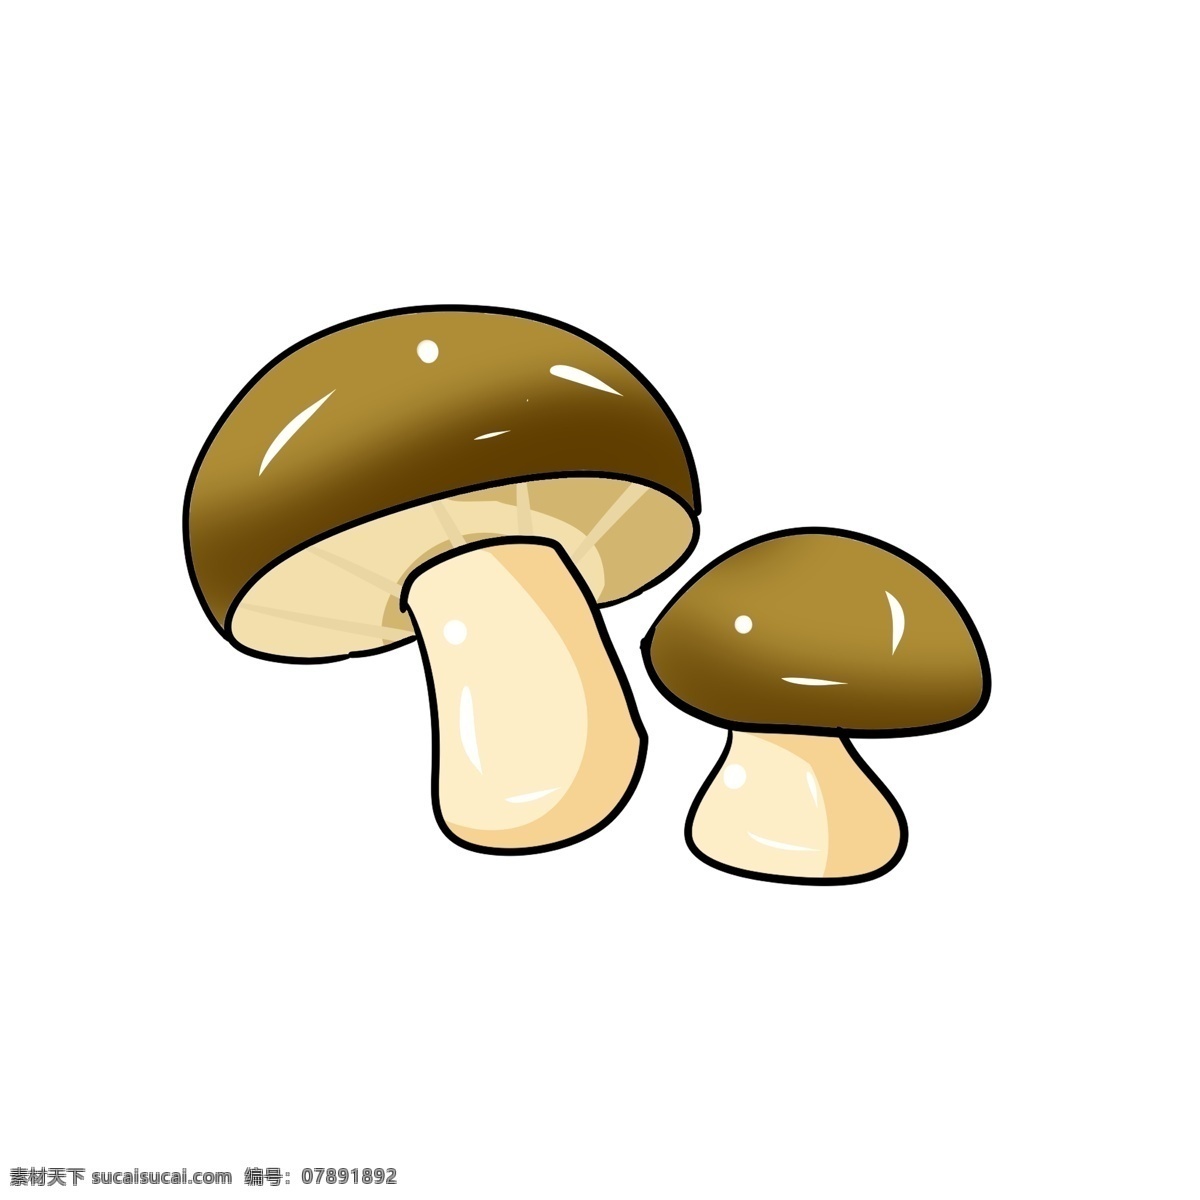 立体 圆形 蘑菇 插图 漂亮的蘑菇 菌类蘑菇 蔬菜蘑菇 图案蘑菇 营养的蘑菇 农作物蘑菇 有机蔬菜 卡通插图